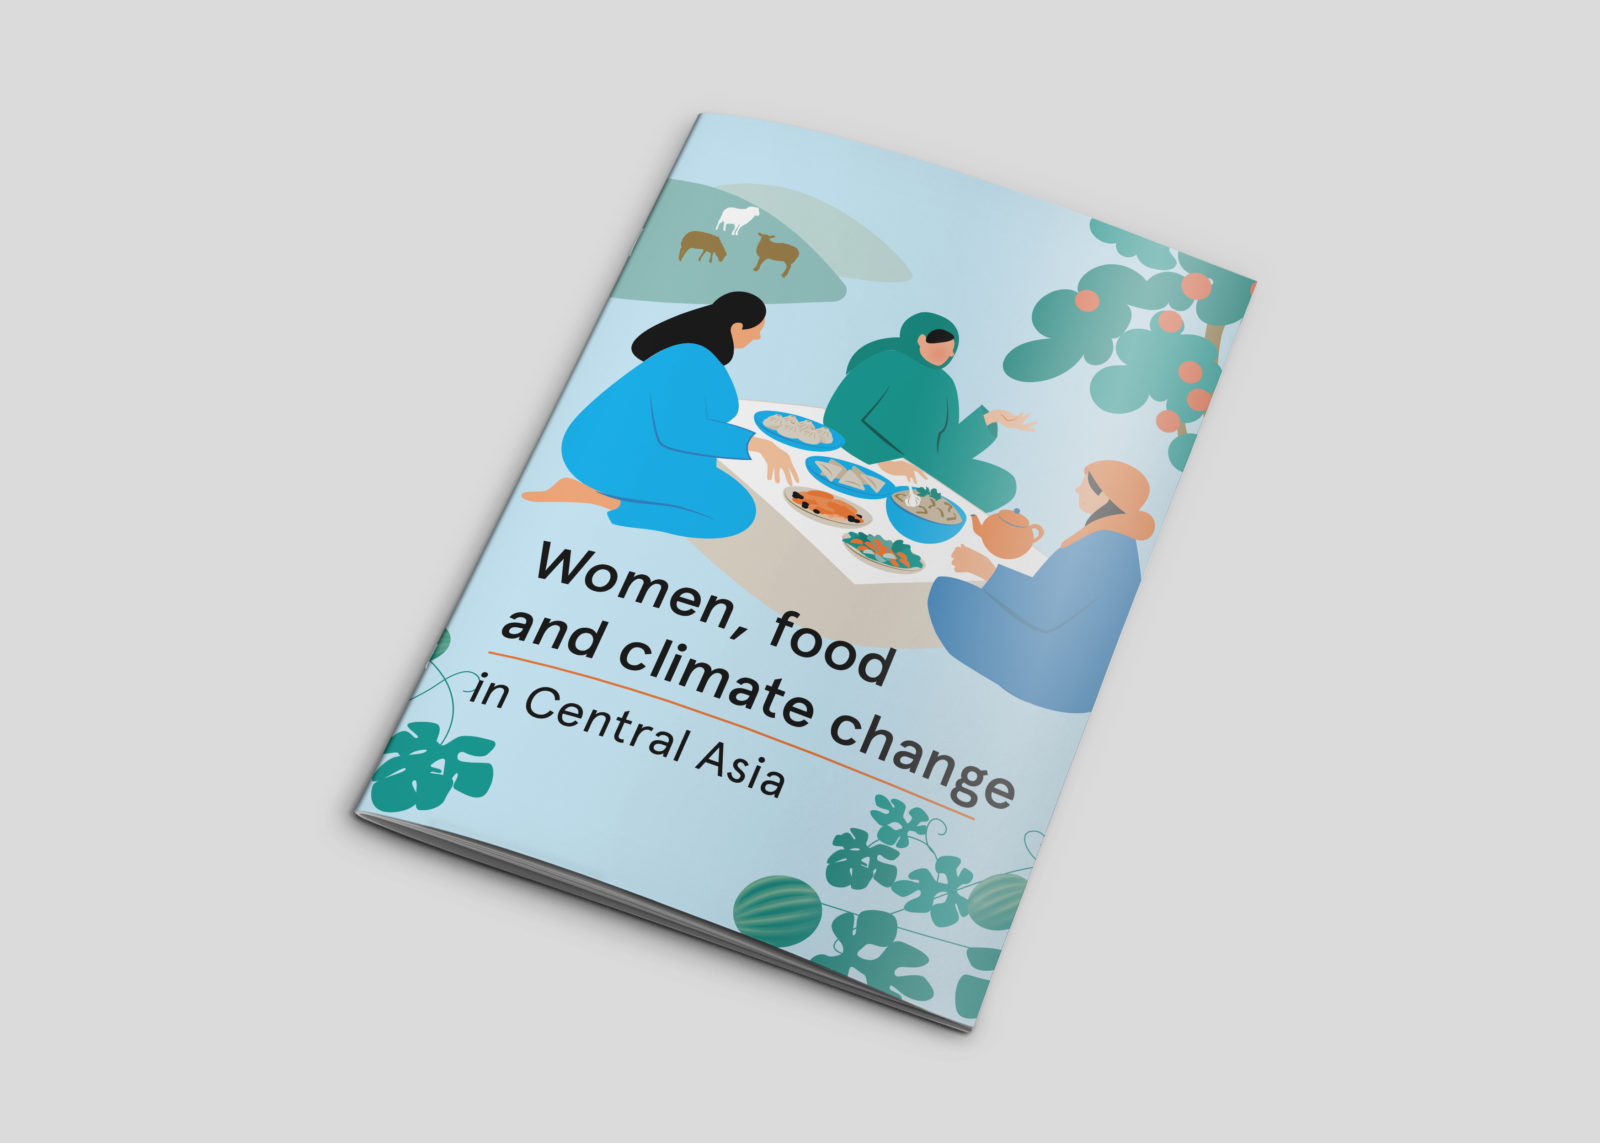 Женщины, продовольствие и изменение климата в Центральной Азии 